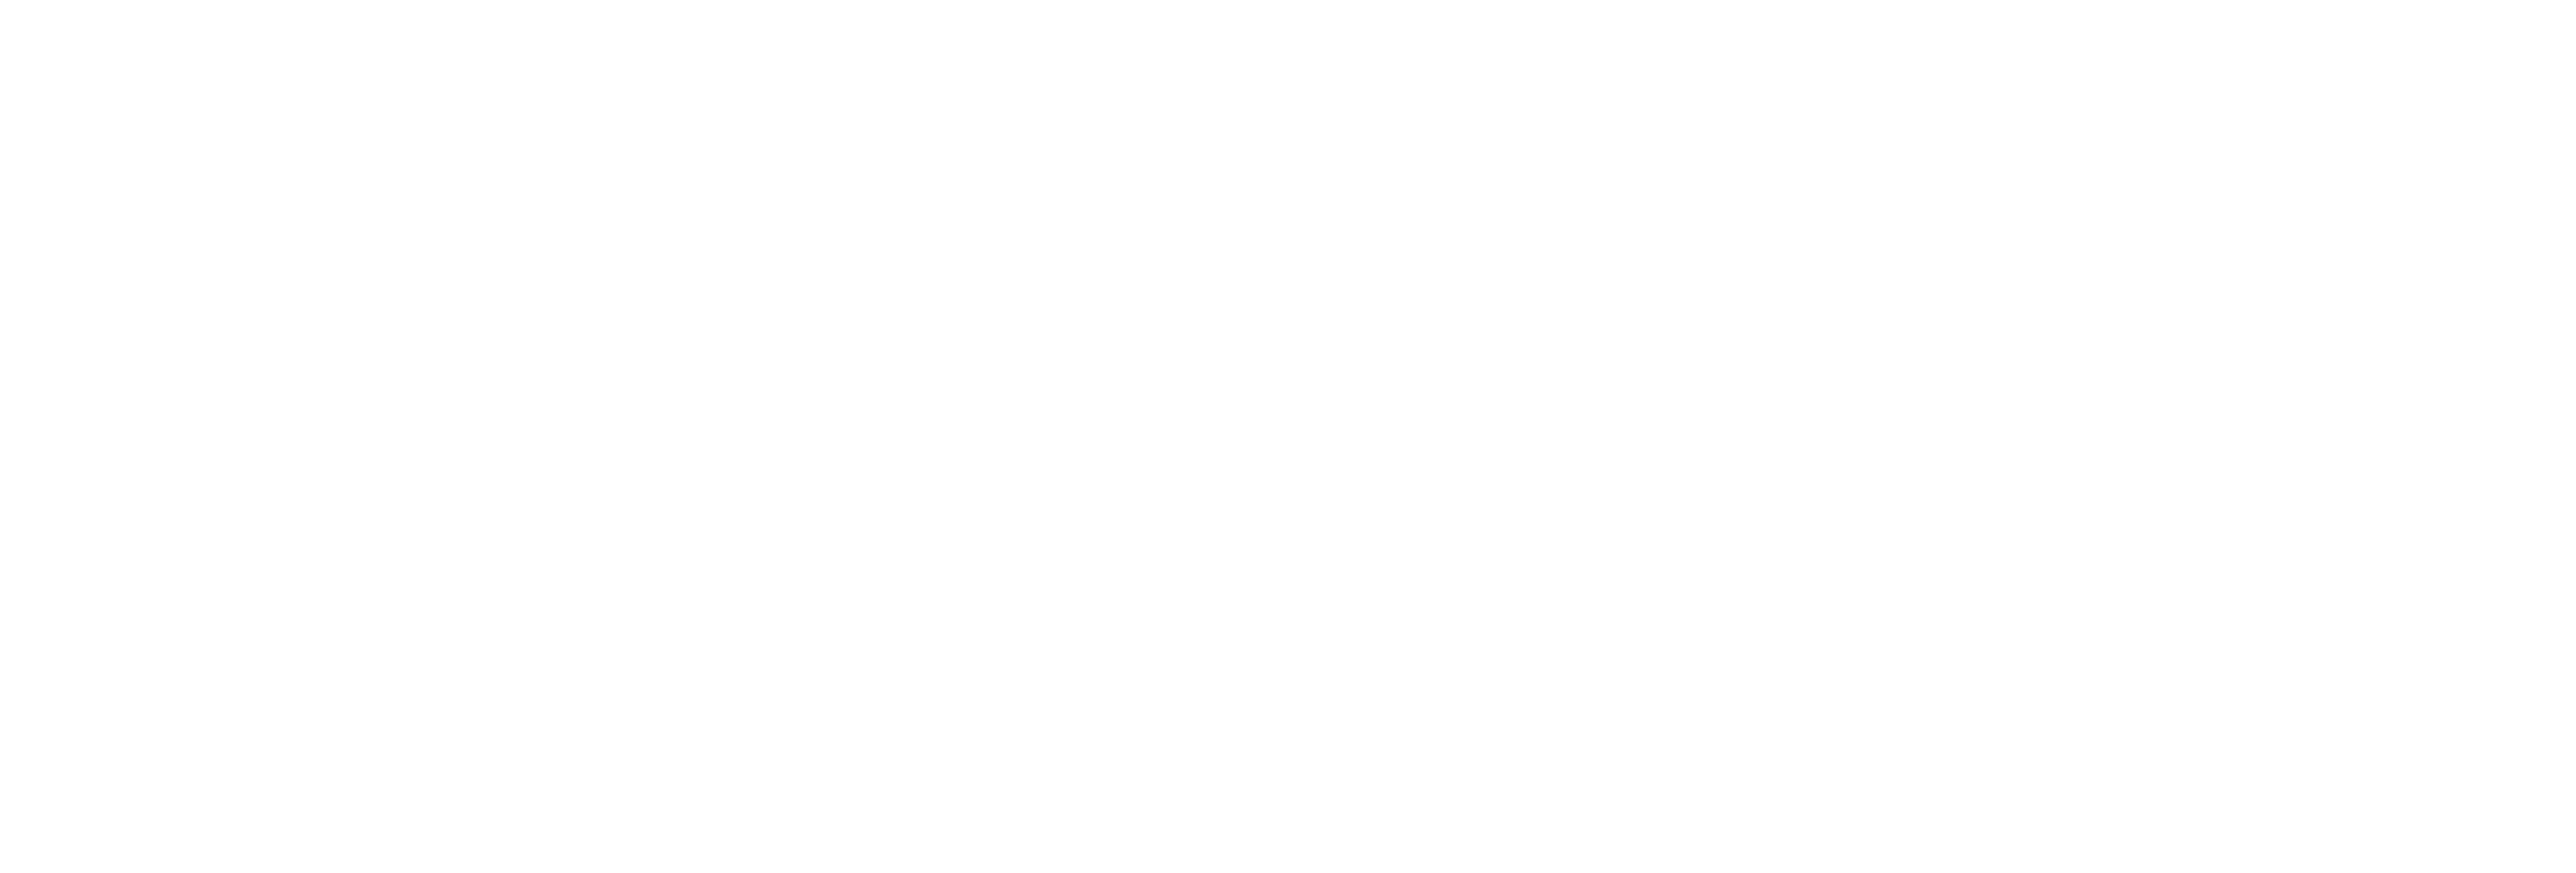 Eric Pothier Photographies